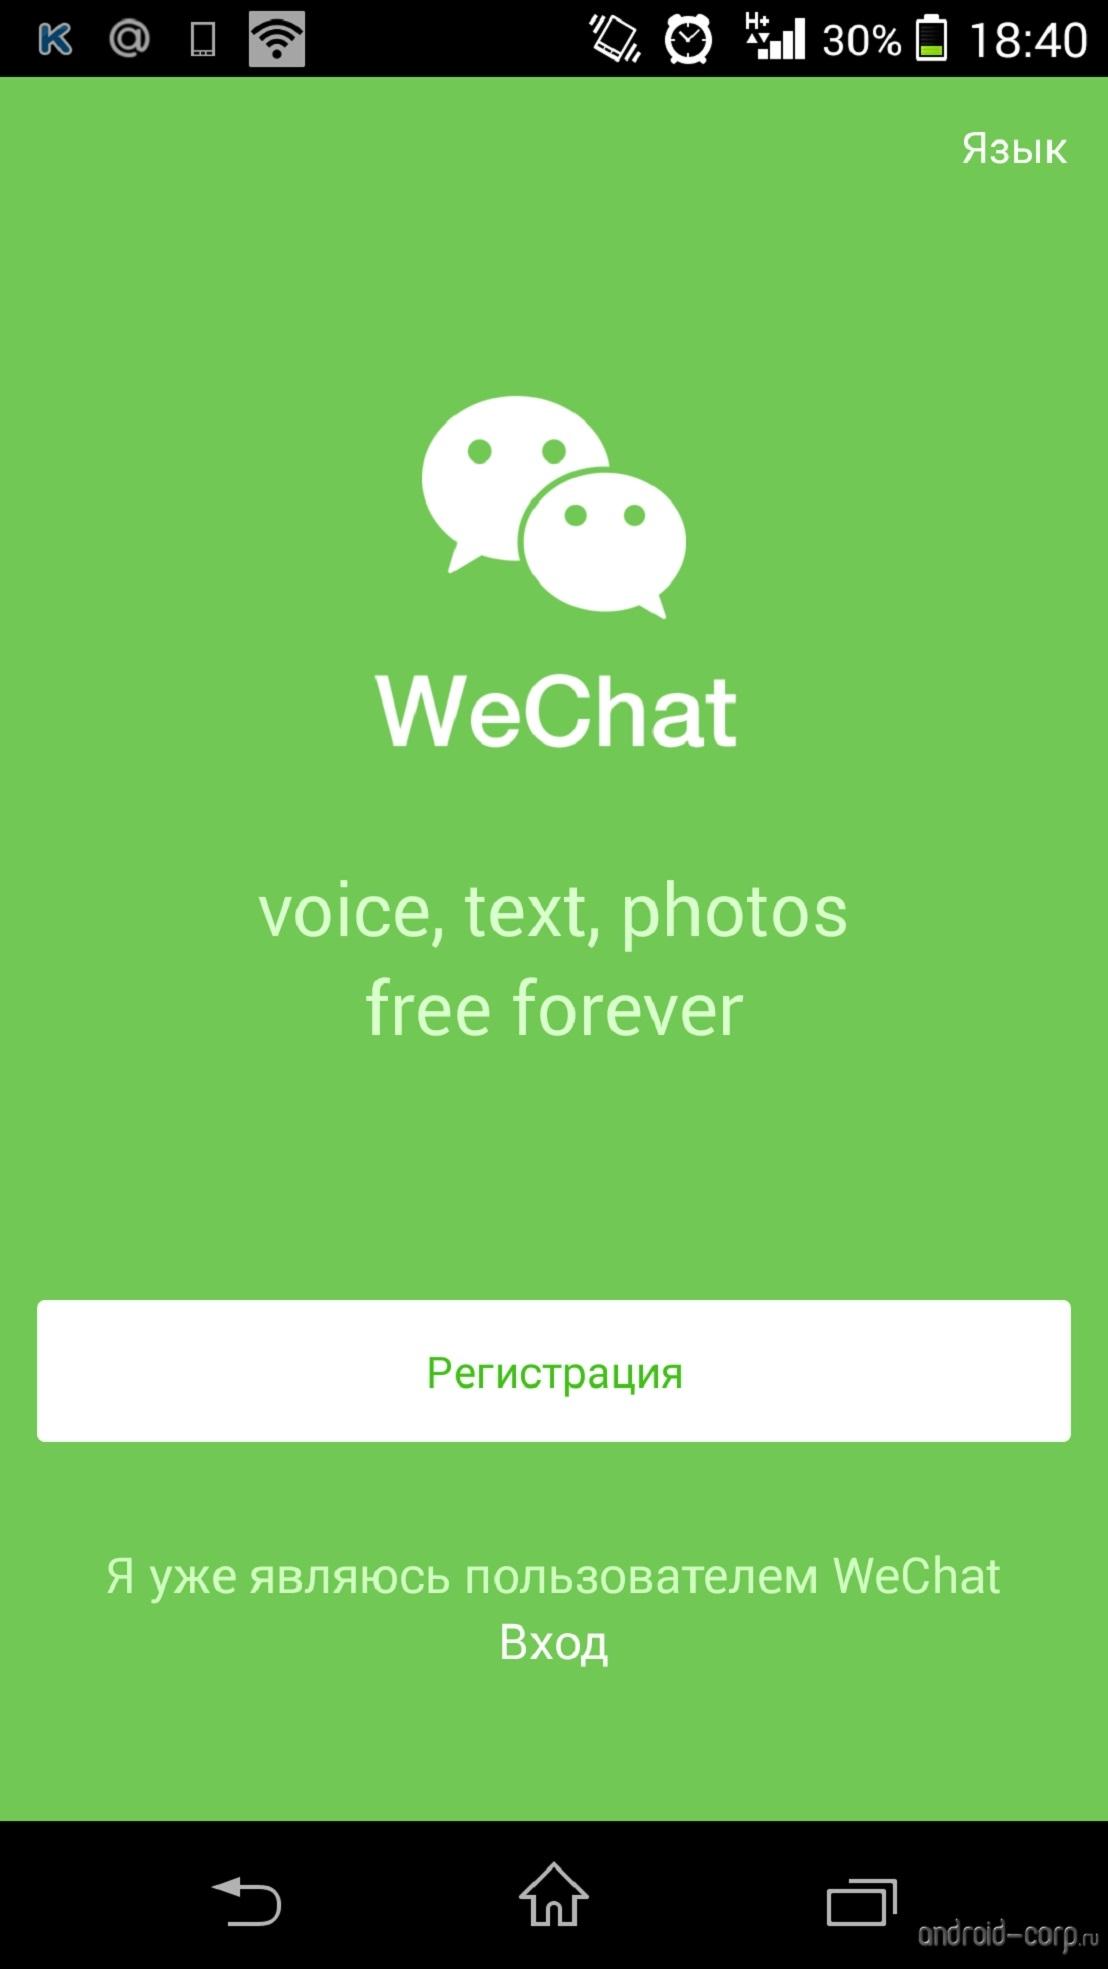 Отвага: WeChat официально уведомляет власти о пользовательских данных